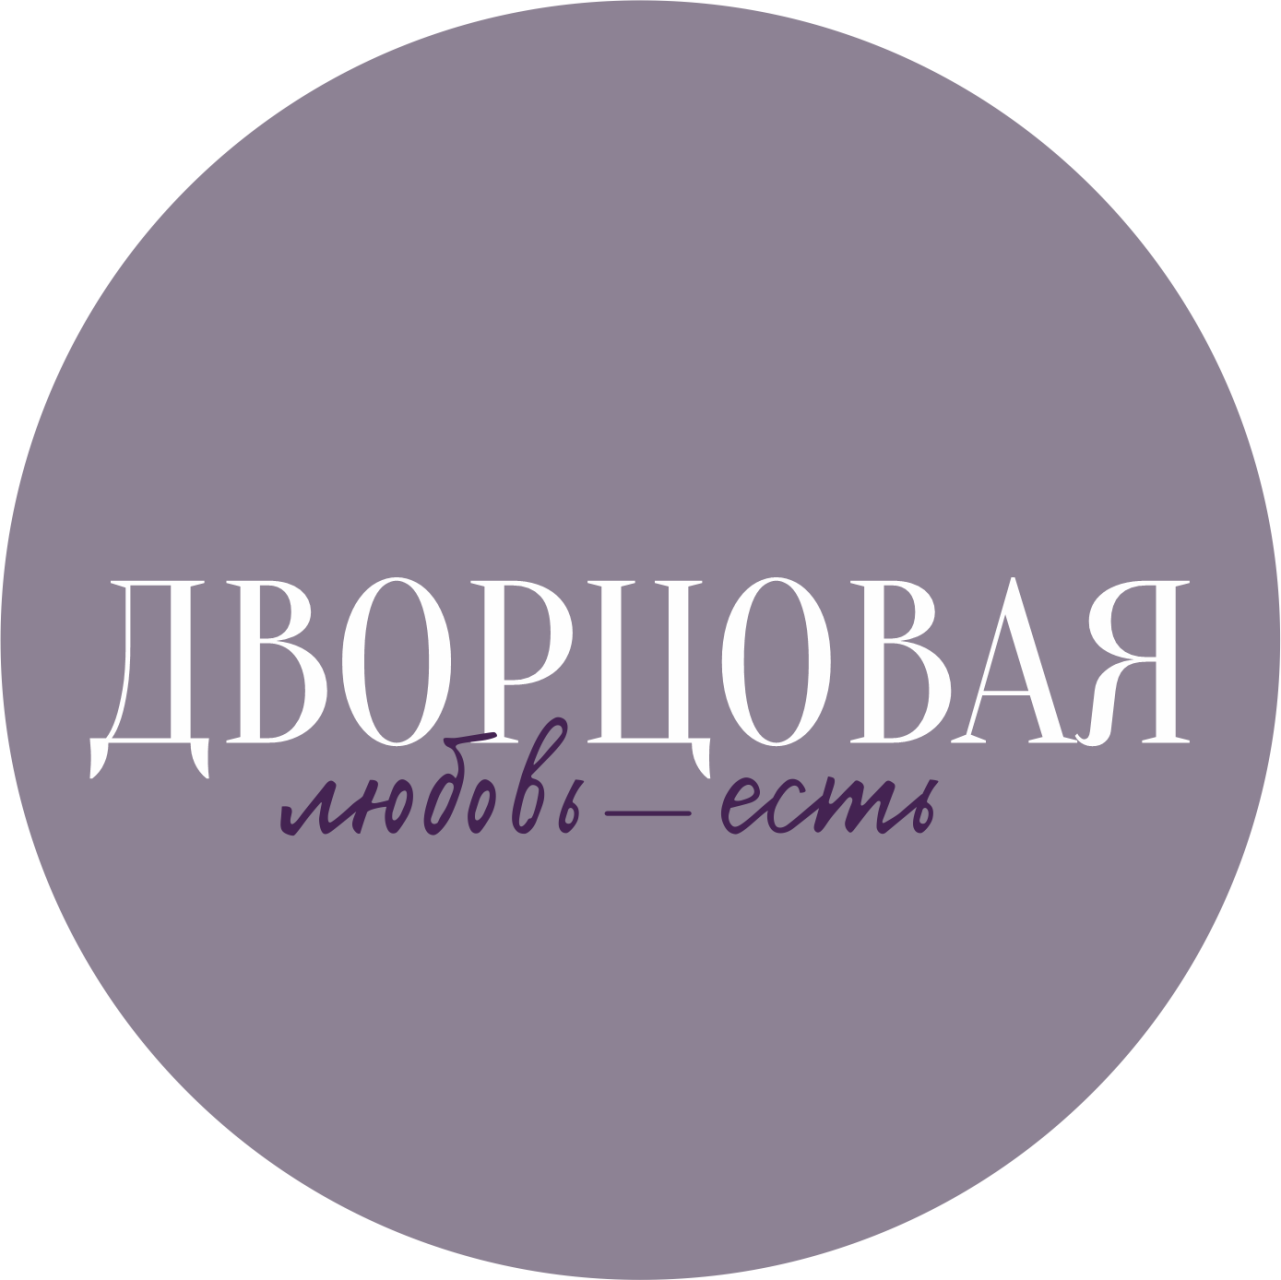 dvortsovaya_logo22-1